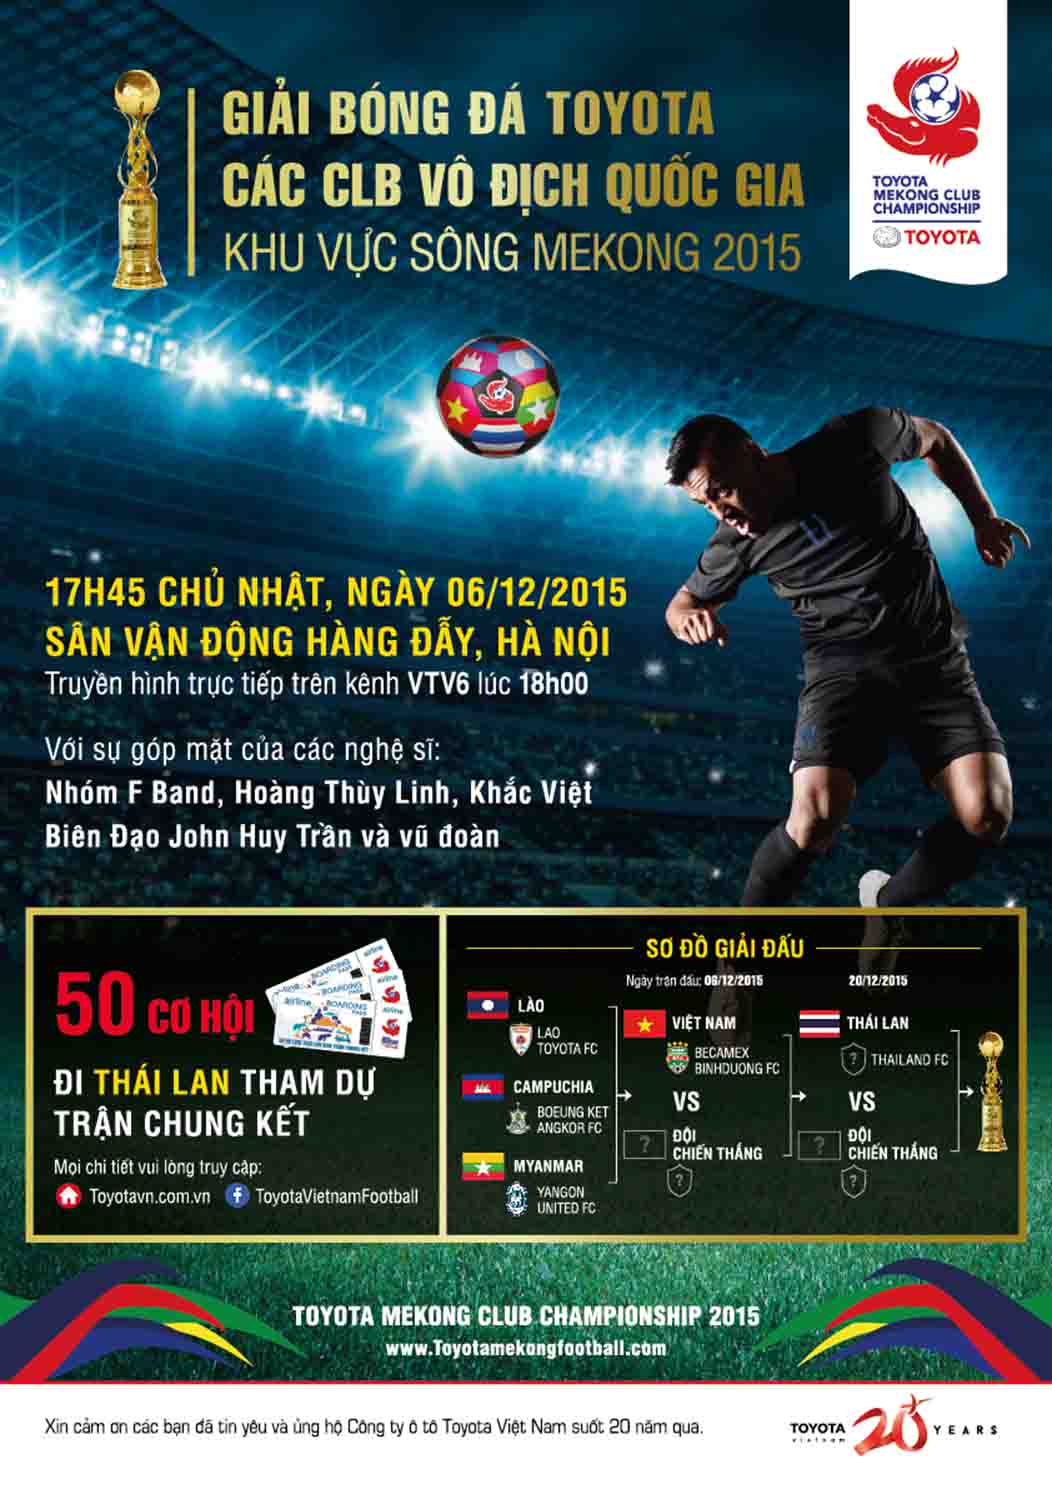 Giải bóng đá Toyota Mekong Club Championship